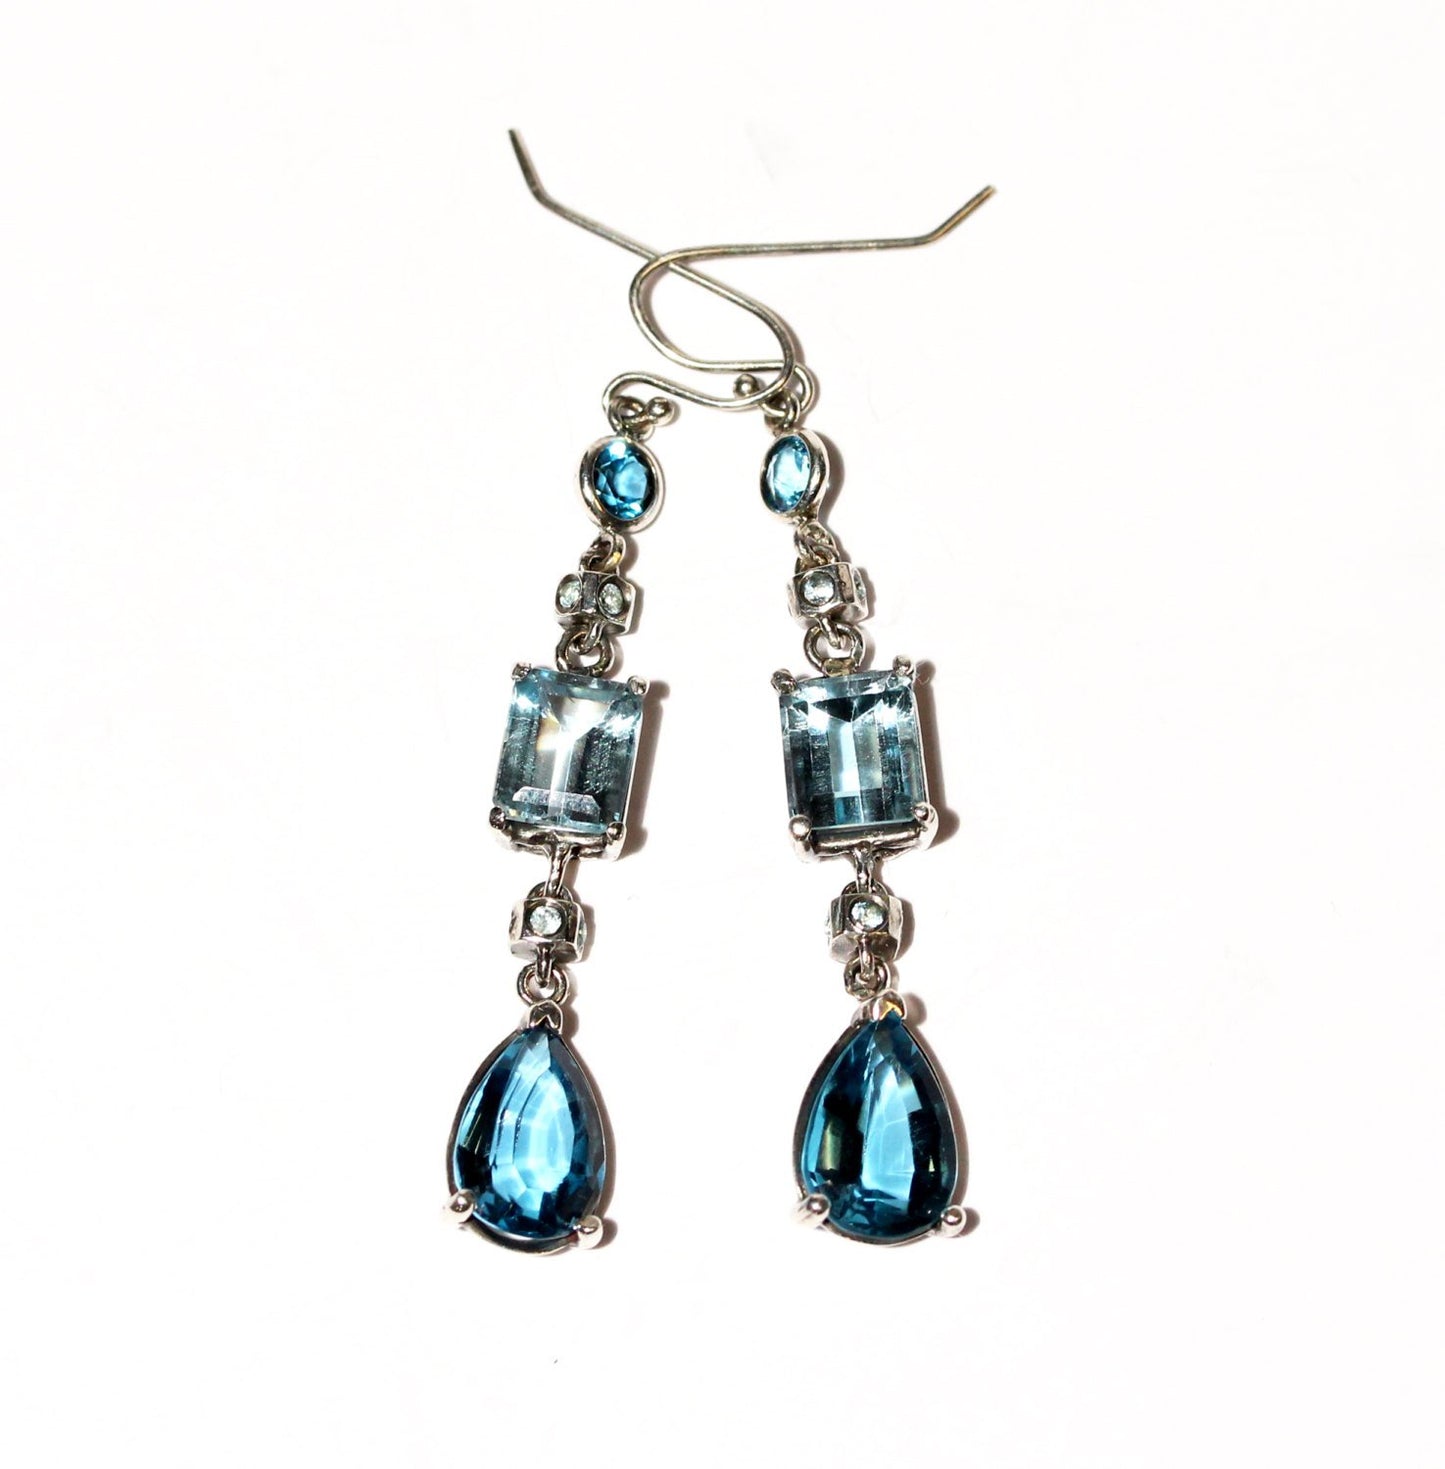 Blue Topaz Gemstone Earrings